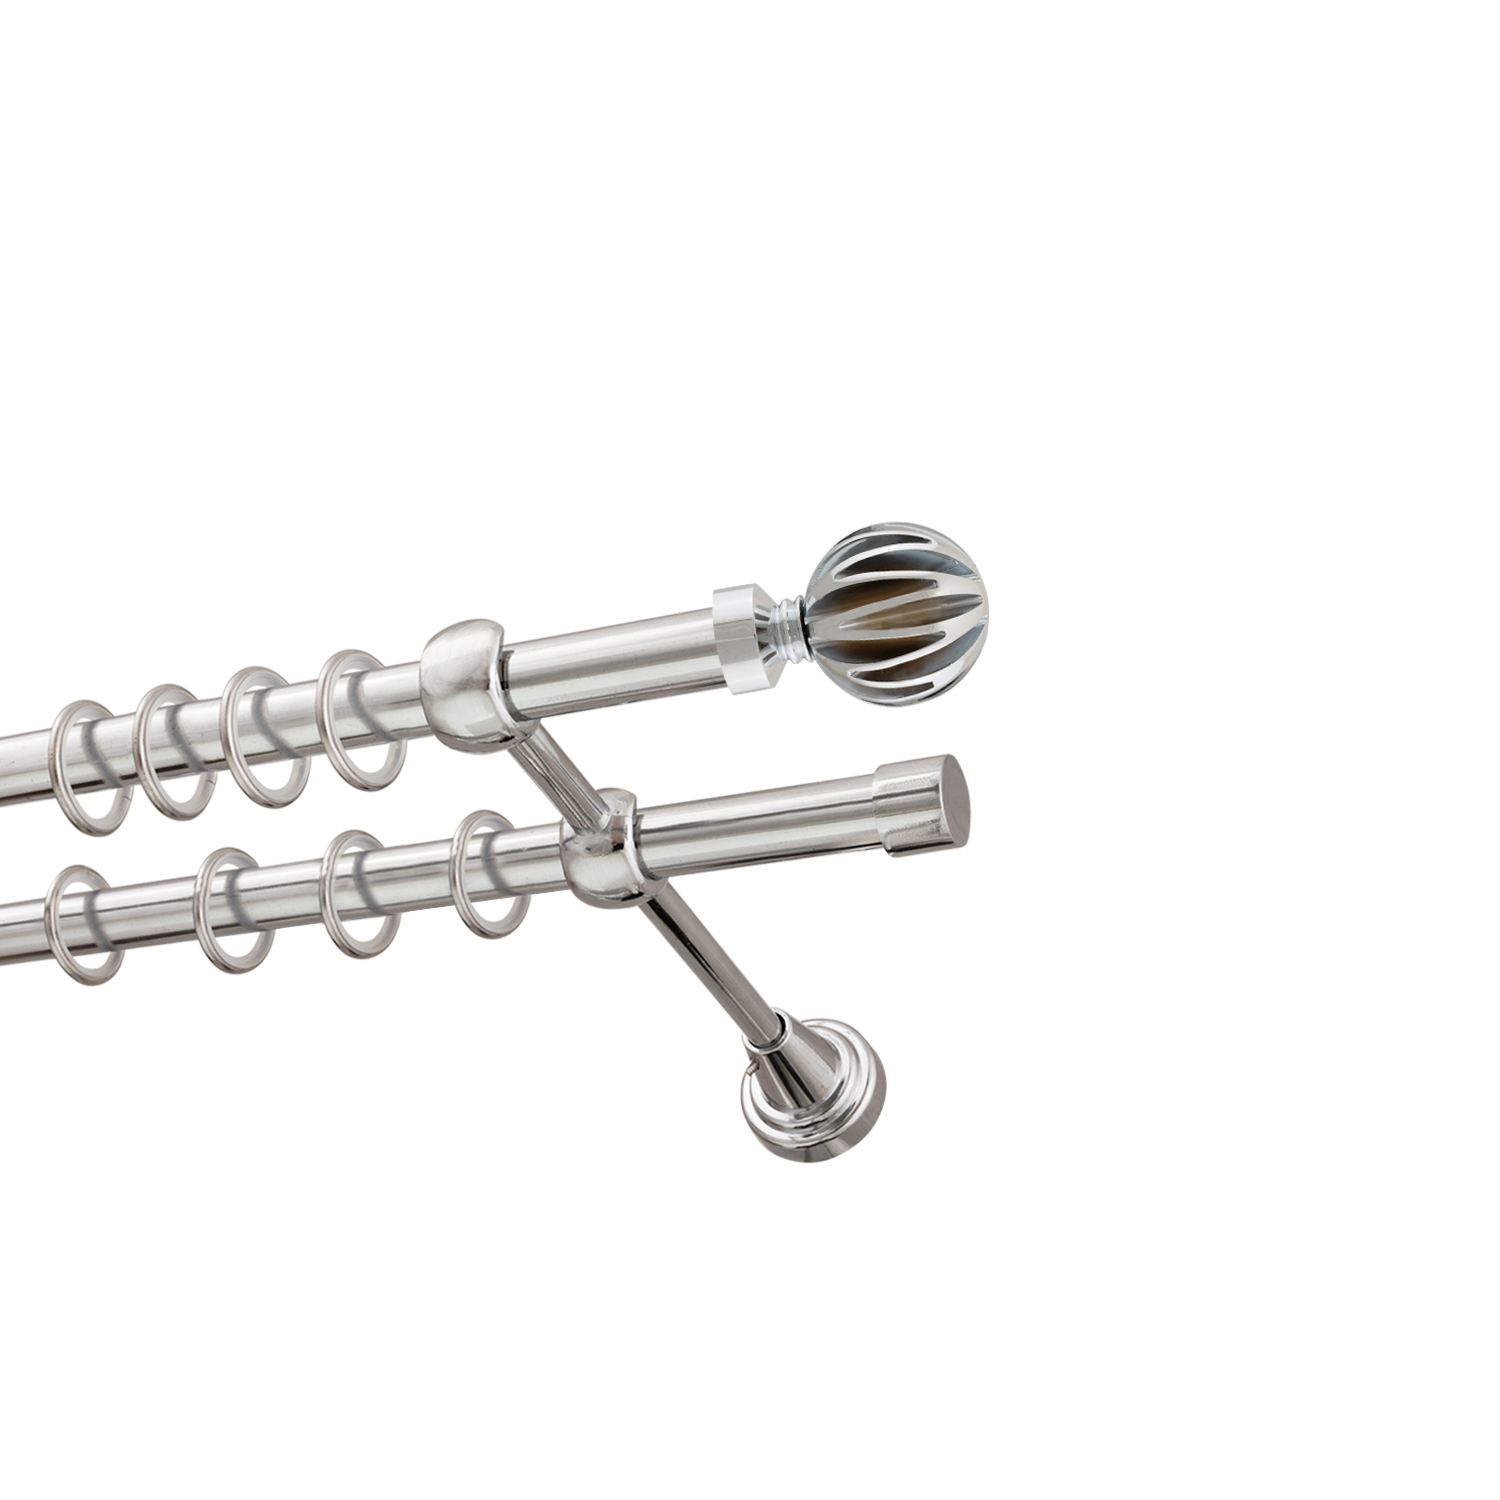 Металлический карниз для штор Шафран, двухрядный 16/16 мм, серебро, гладкая штанга, длина 300 см